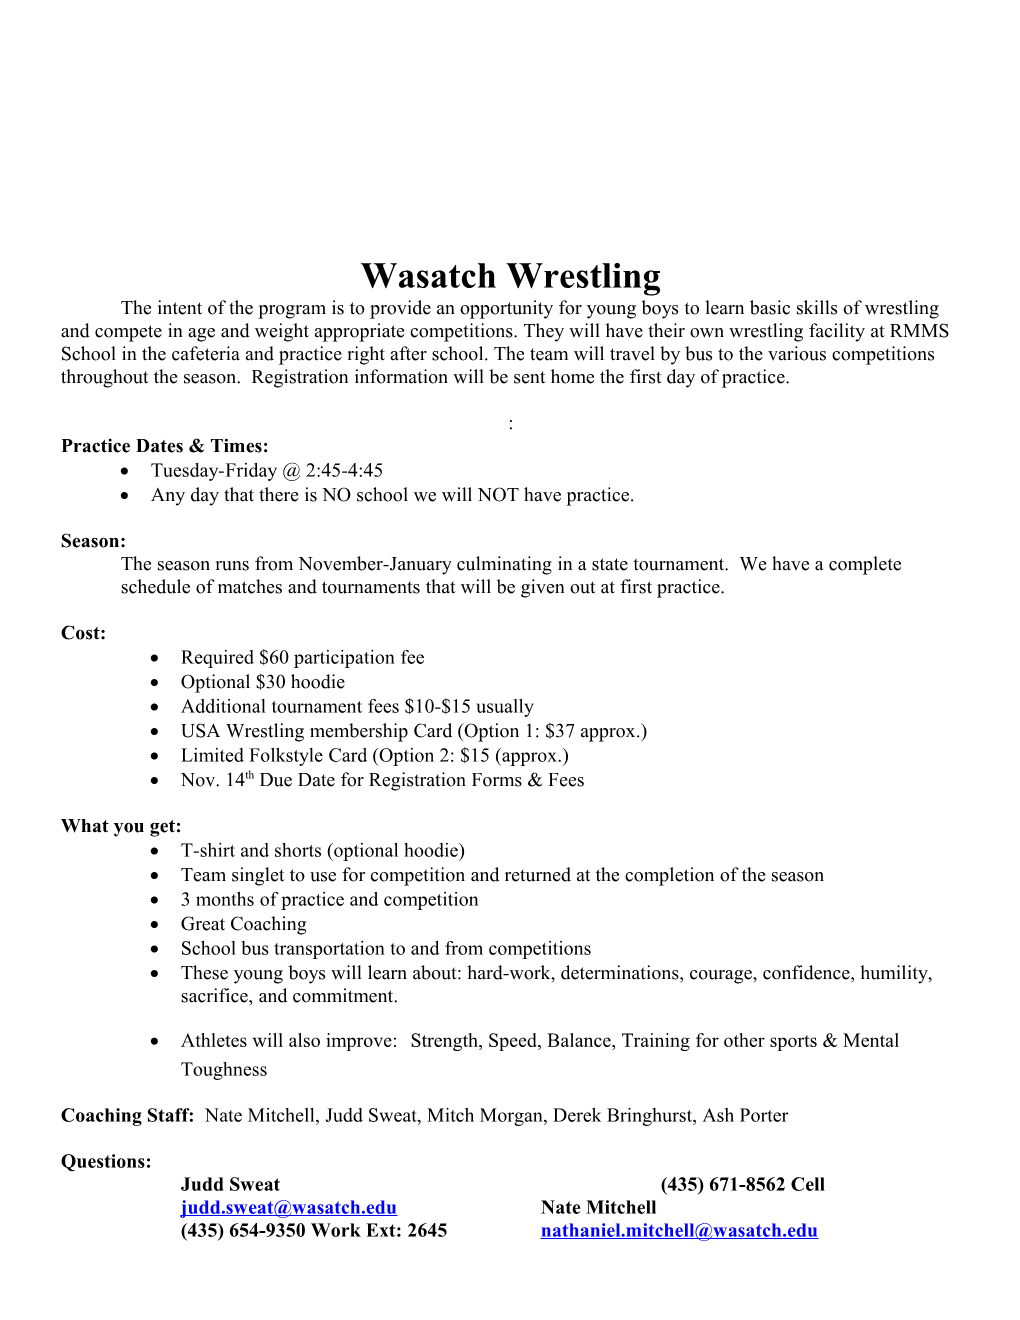 Wasatch Wrestling